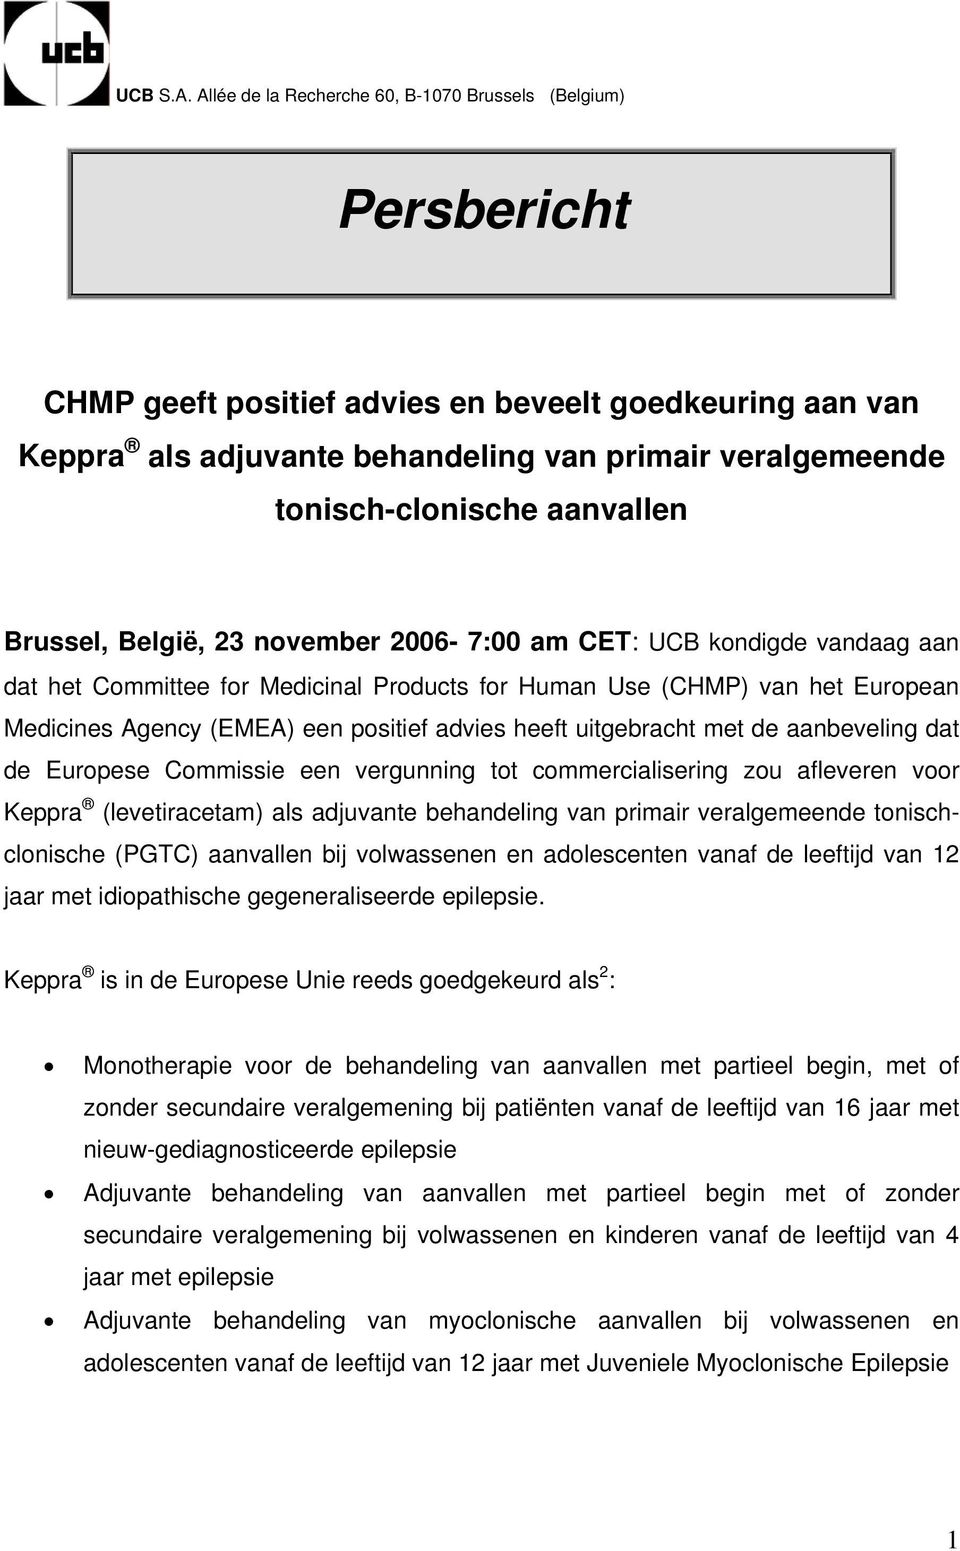 aanvallen Brussel, België, 23 november 2006-7:00 am CET: UCB kondigde vandaag aan dat het Committee for Medicinal Products for Human Use (CHMP) van het European Medicines Agency (EMEA) een positief